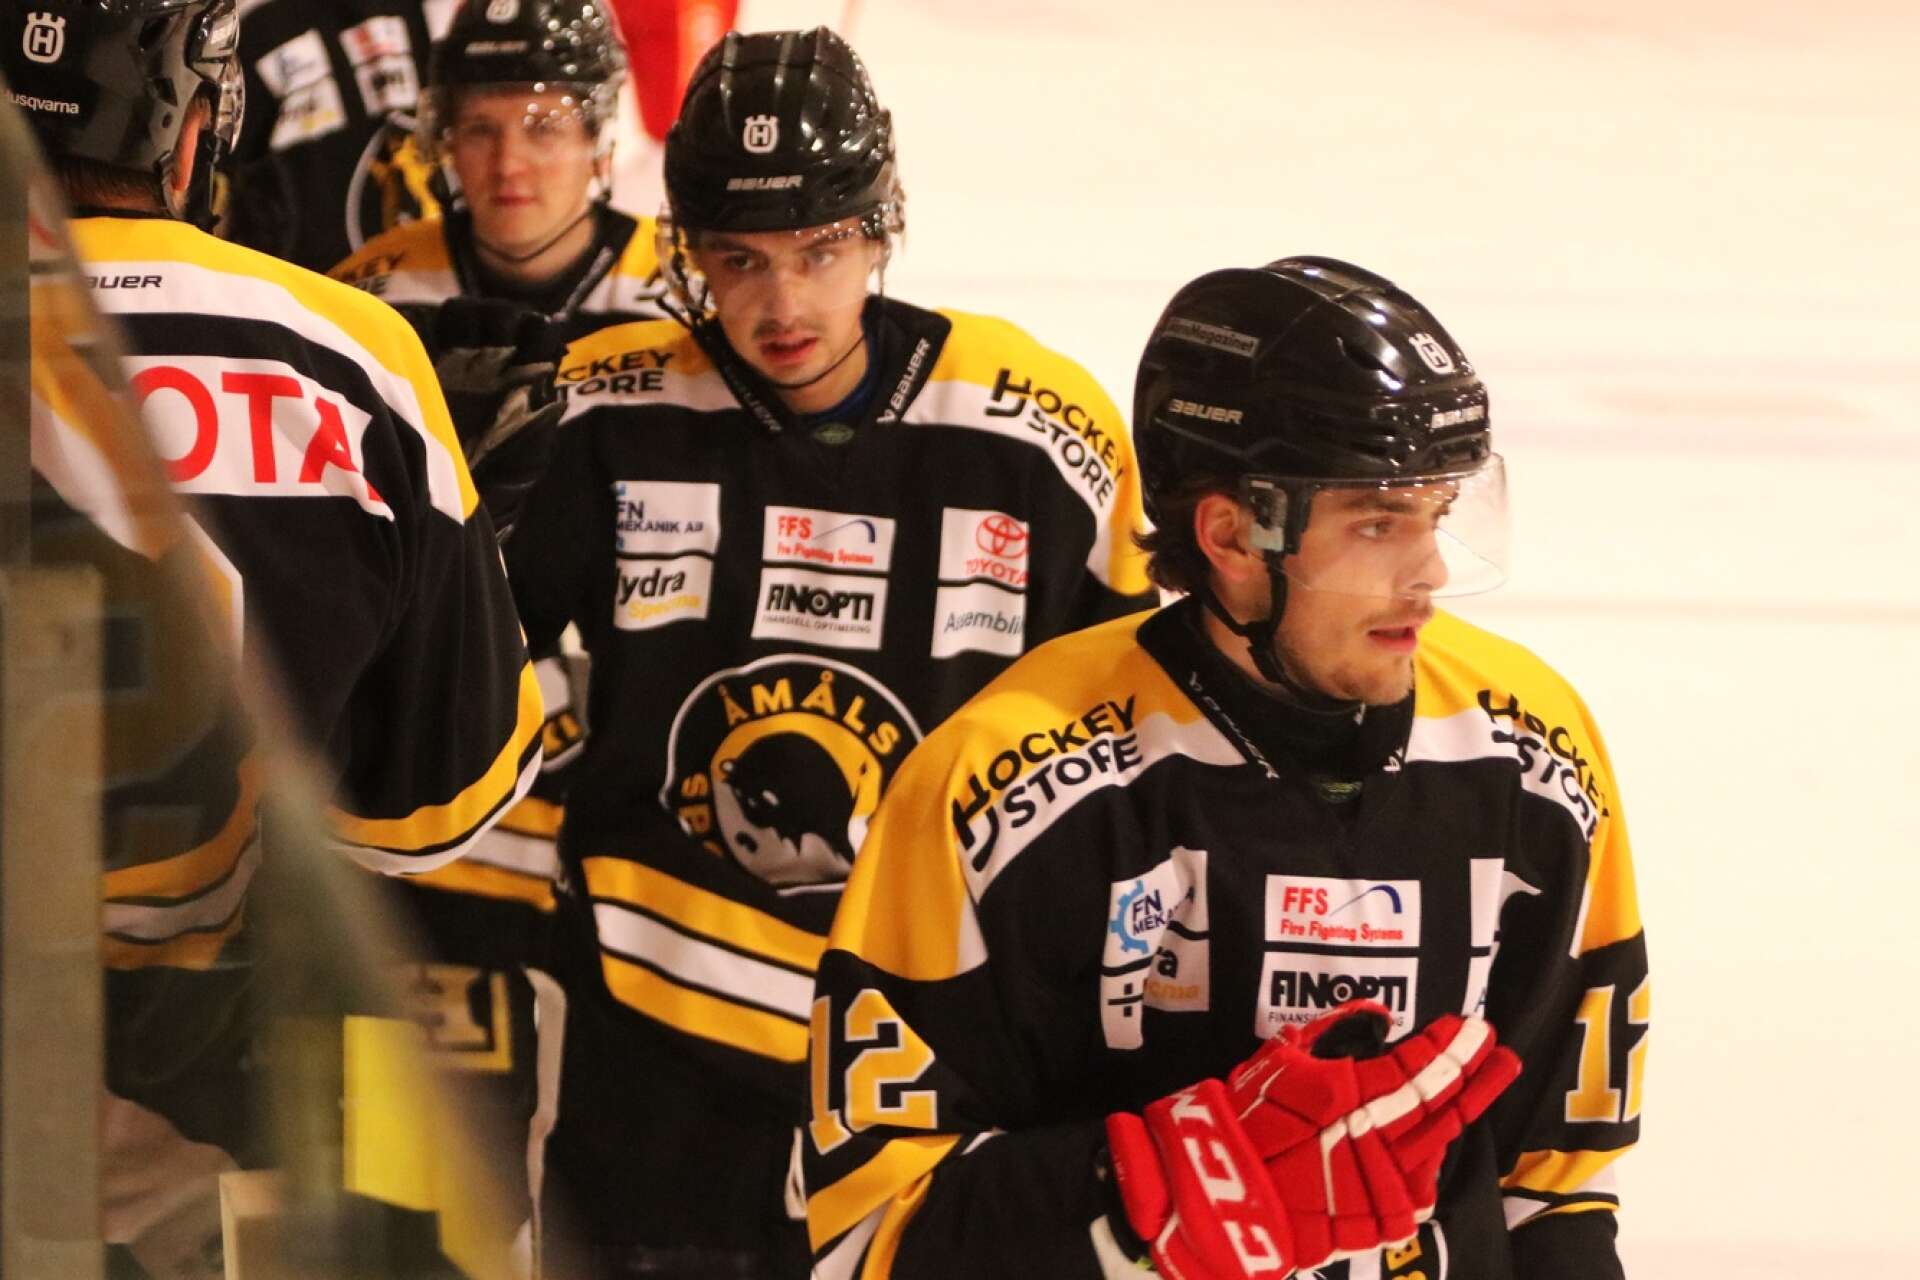 Michal Matiasko, närmast kameran, och hans tjeckiske landsman Erik Cermak lämnar Åmåls SK med två omgångar kvar att spela efter att klubben säkrat nytt kontrakt i Hockeytvåan.